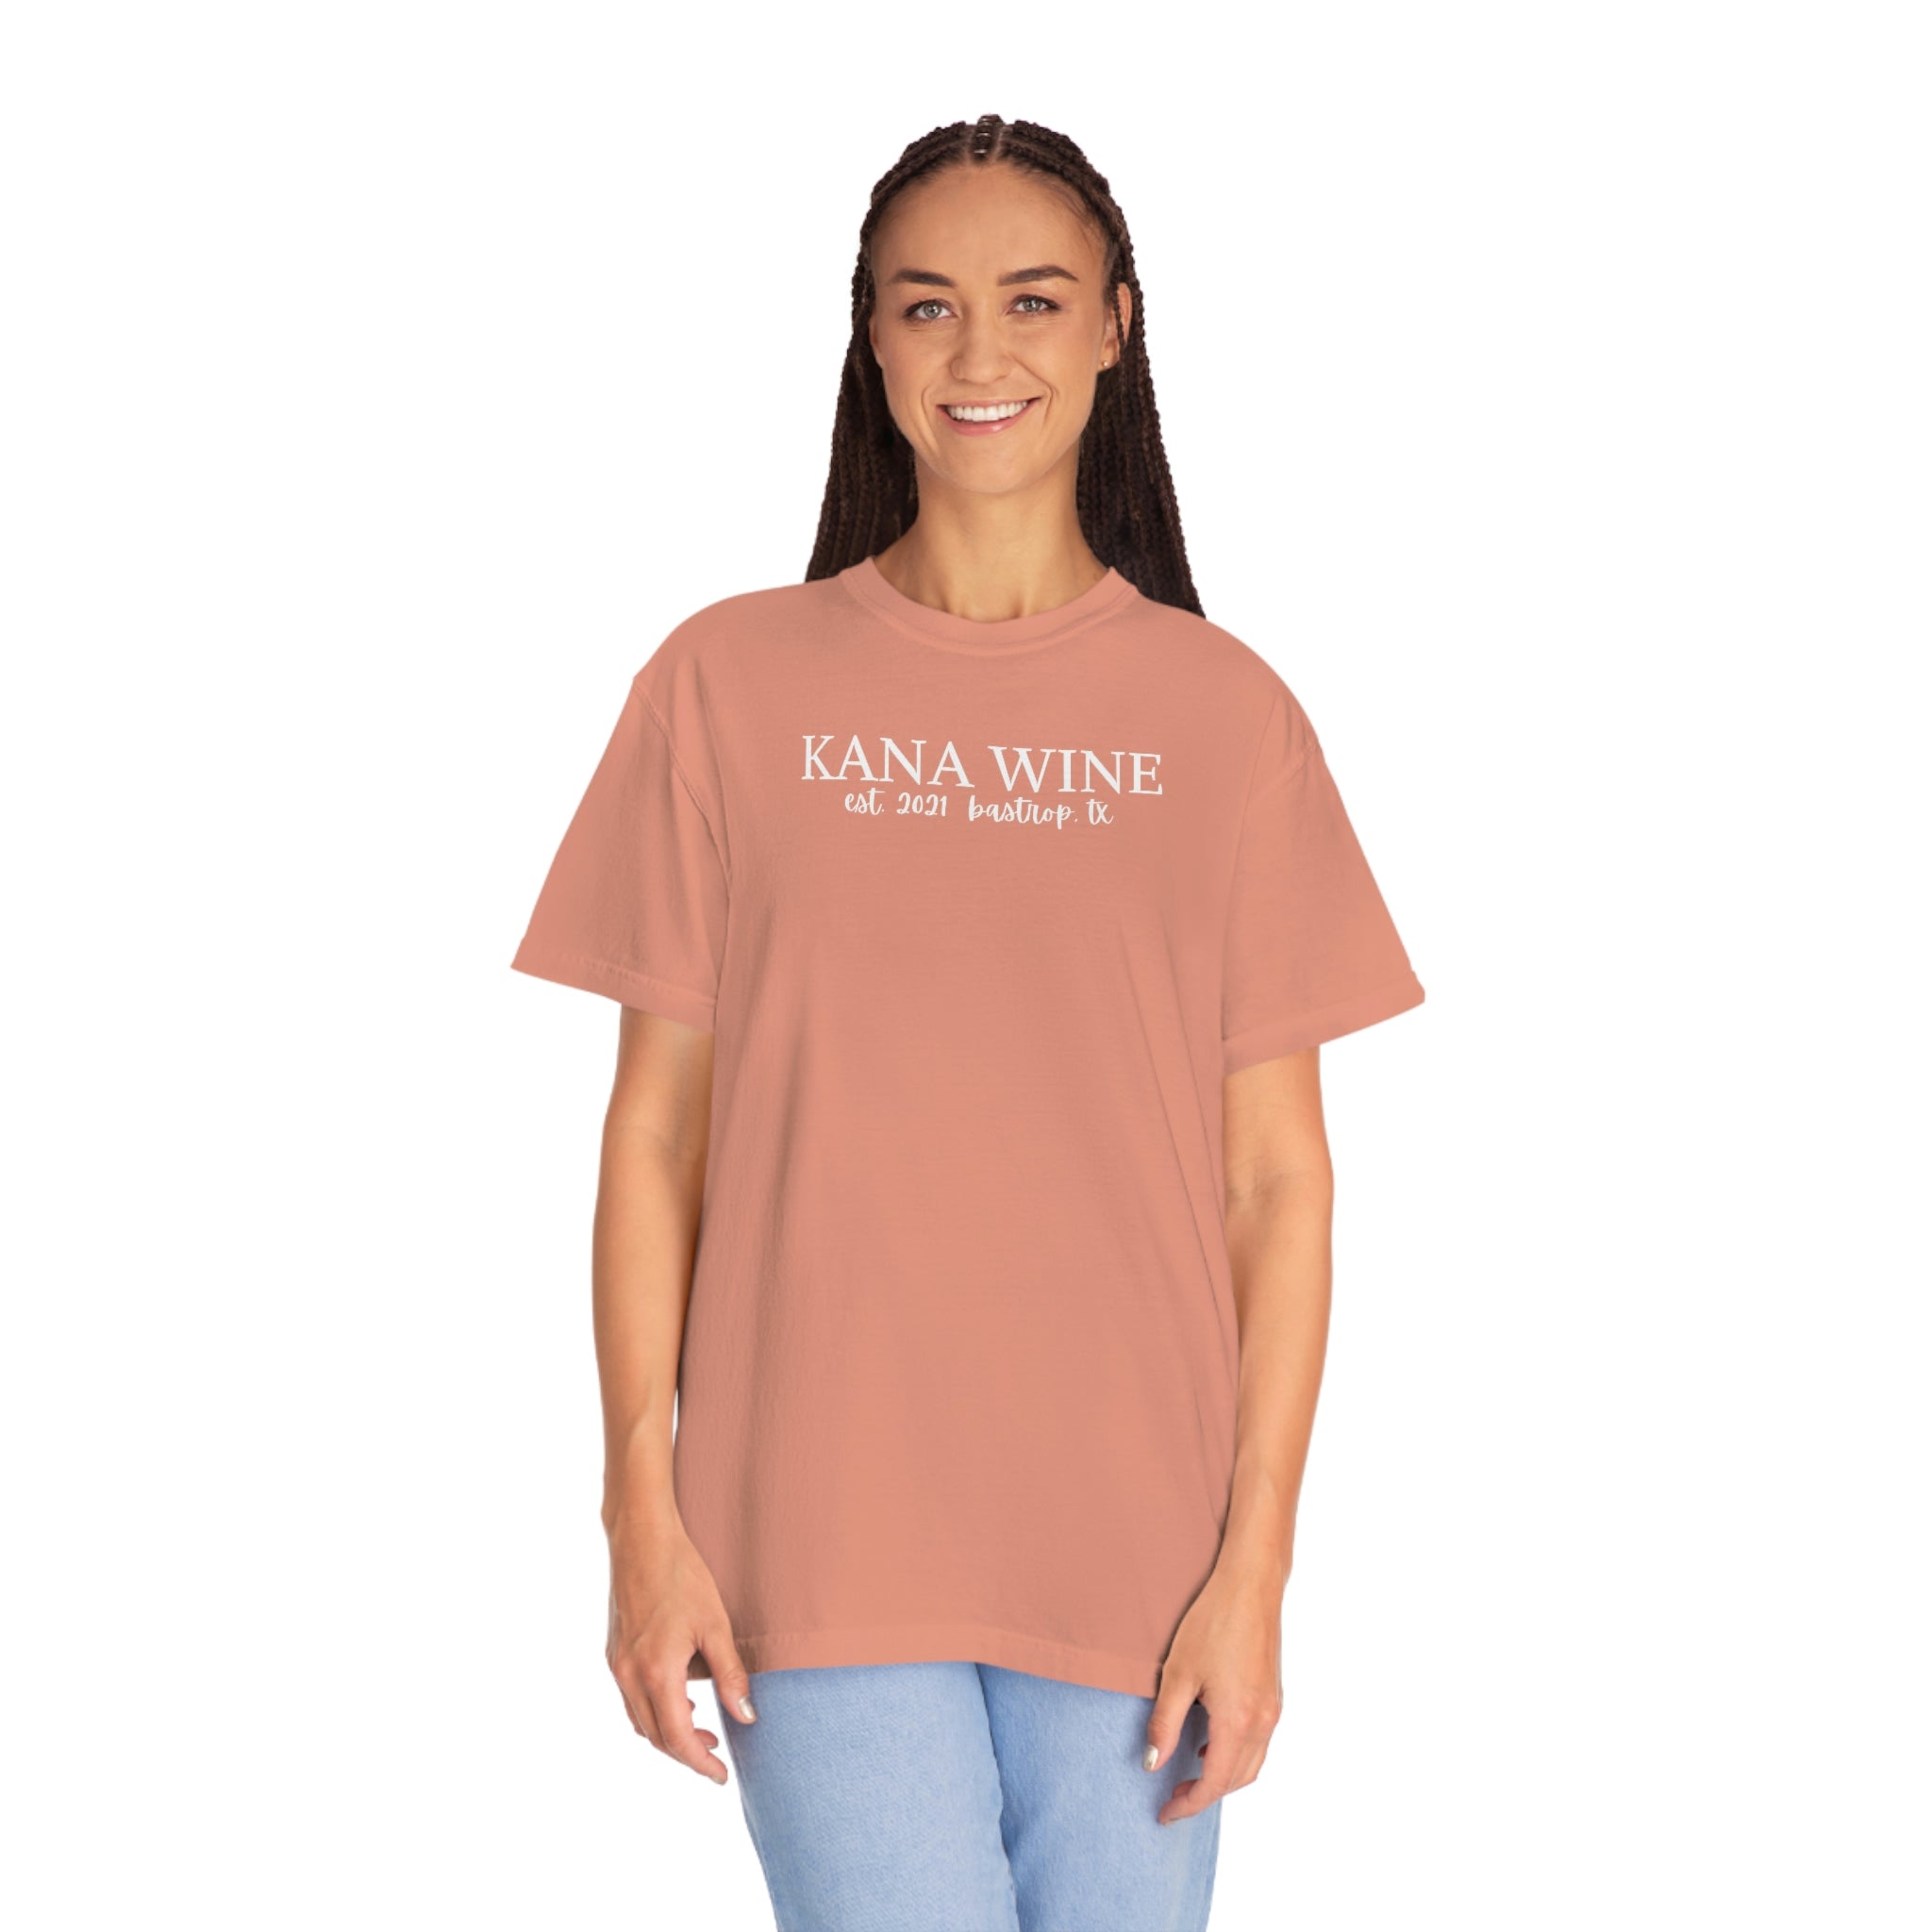 Kana Wine Unisex T-shirt